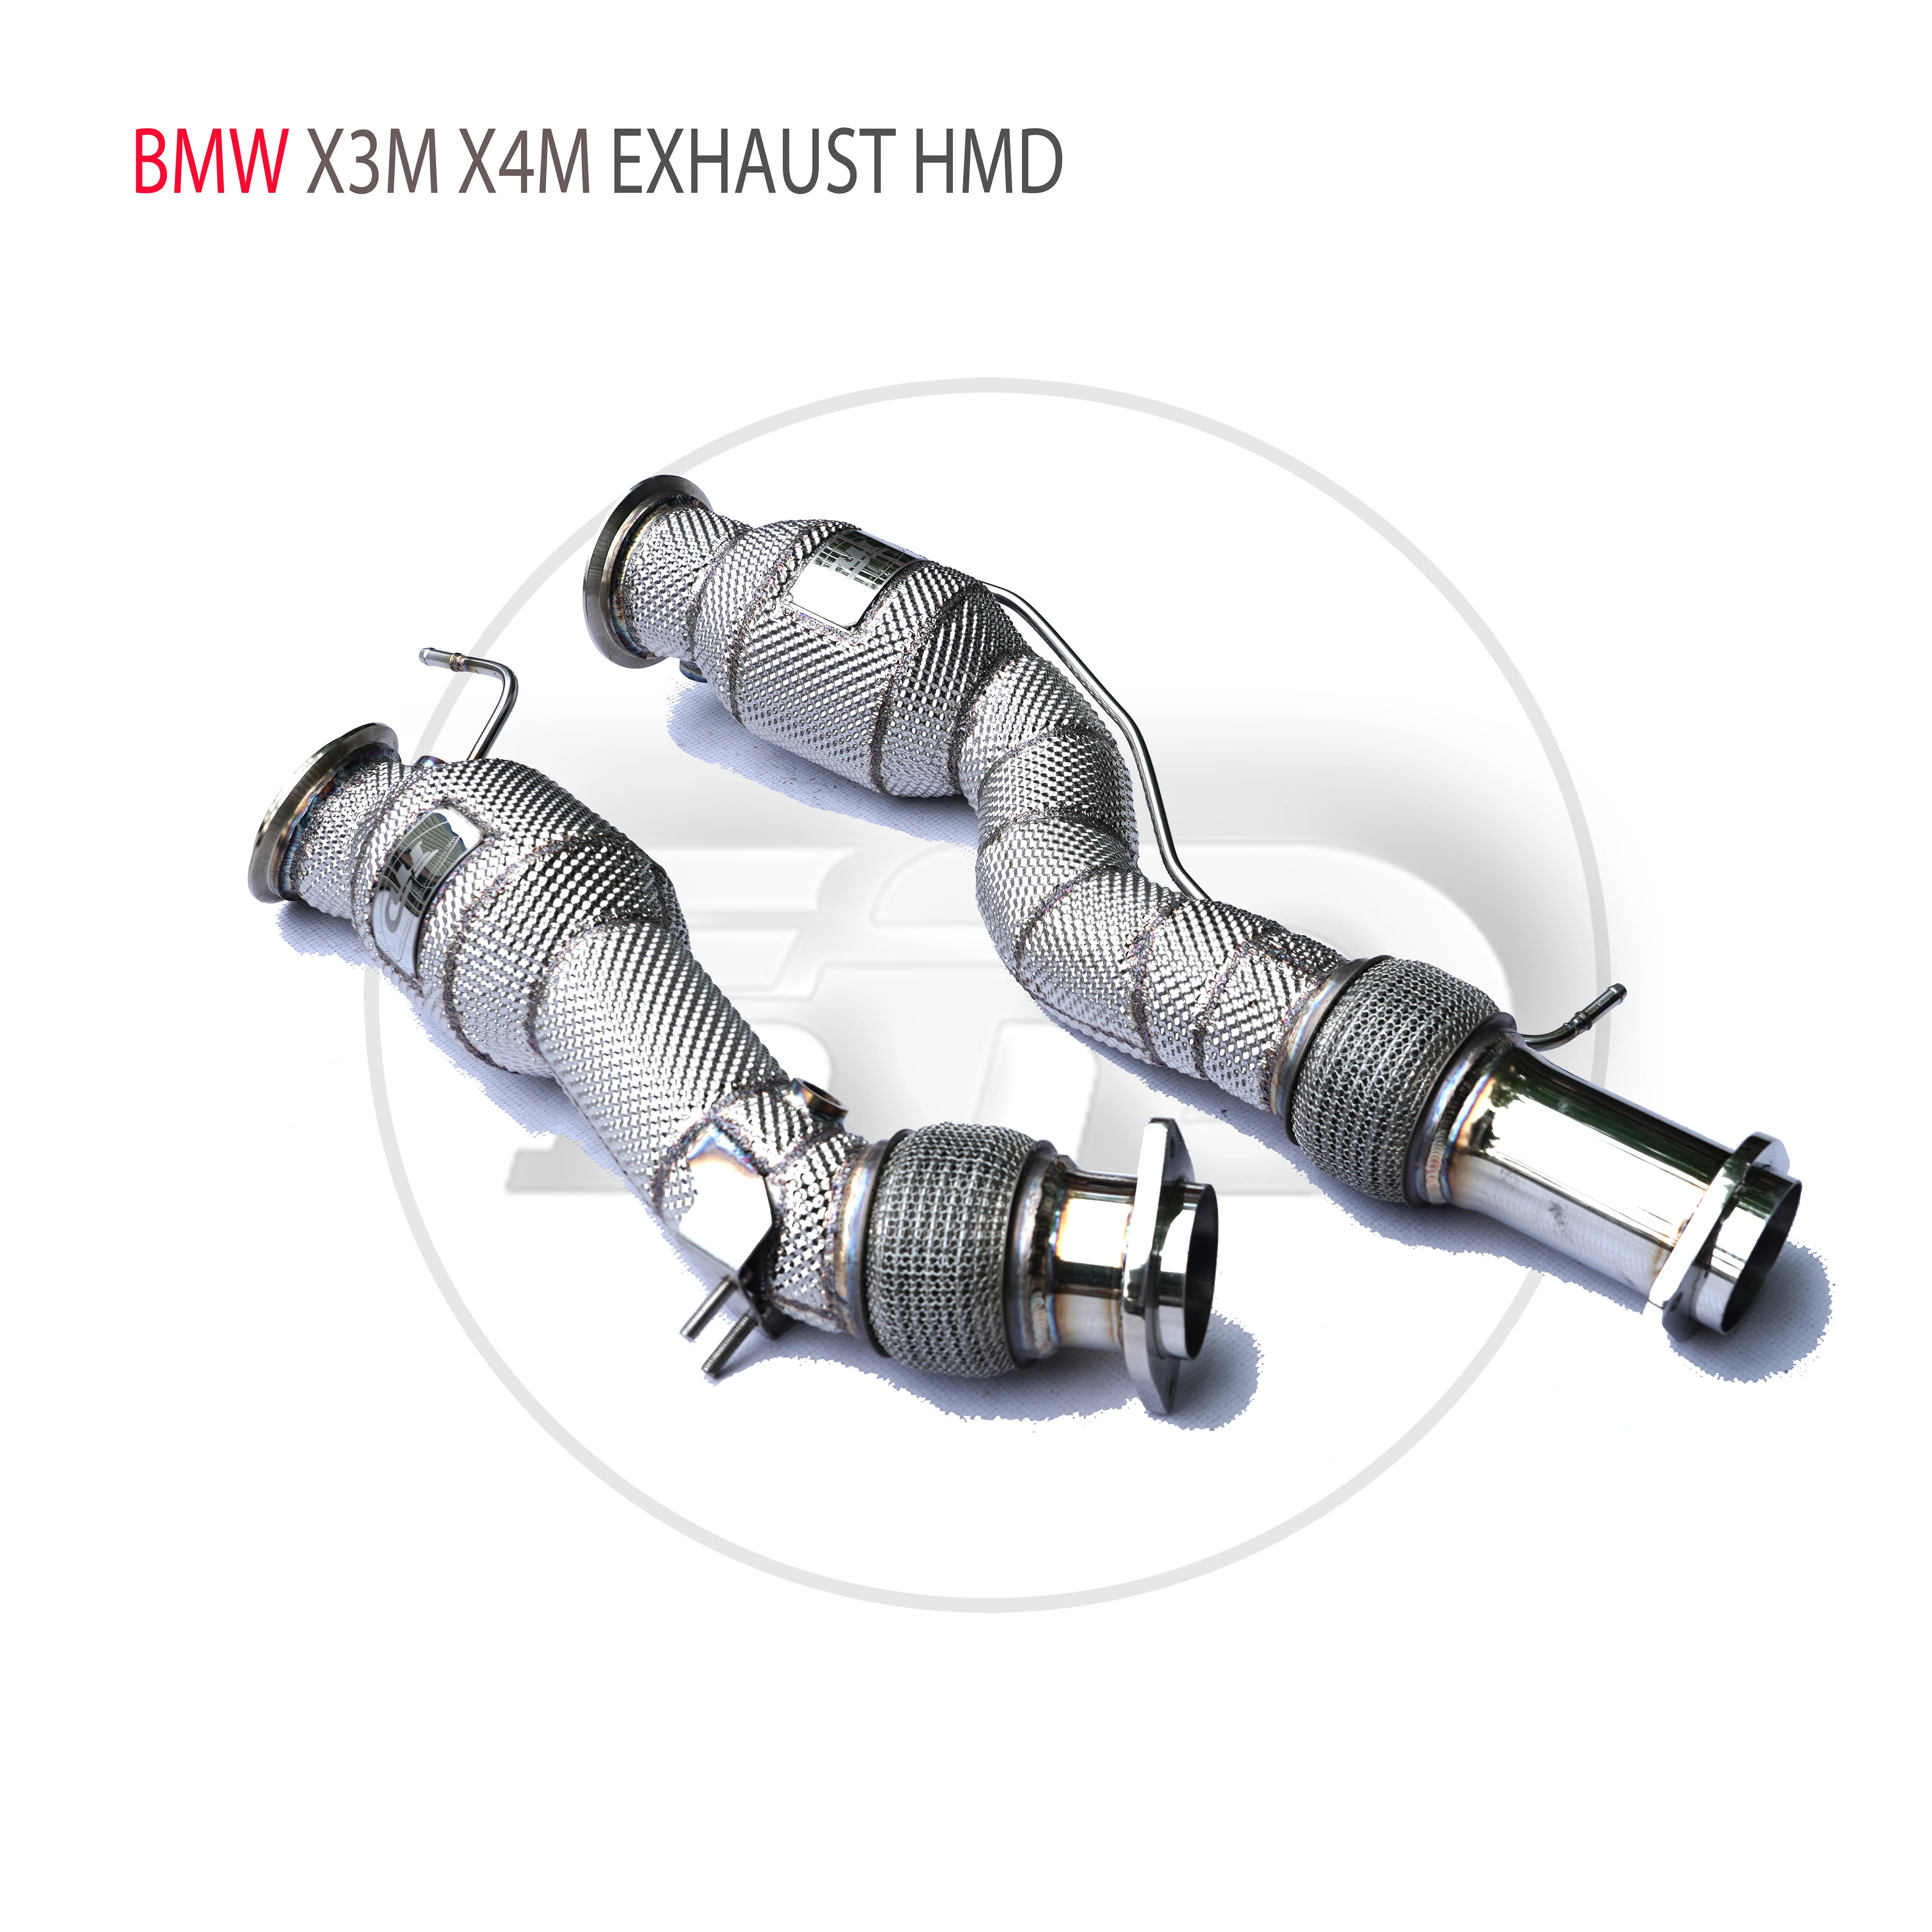 

HMD автомобильные аксессуары, выхлопная система, высокая производительность потока, водосточная труба для BMW X3M X4M с каталитическим конвертером